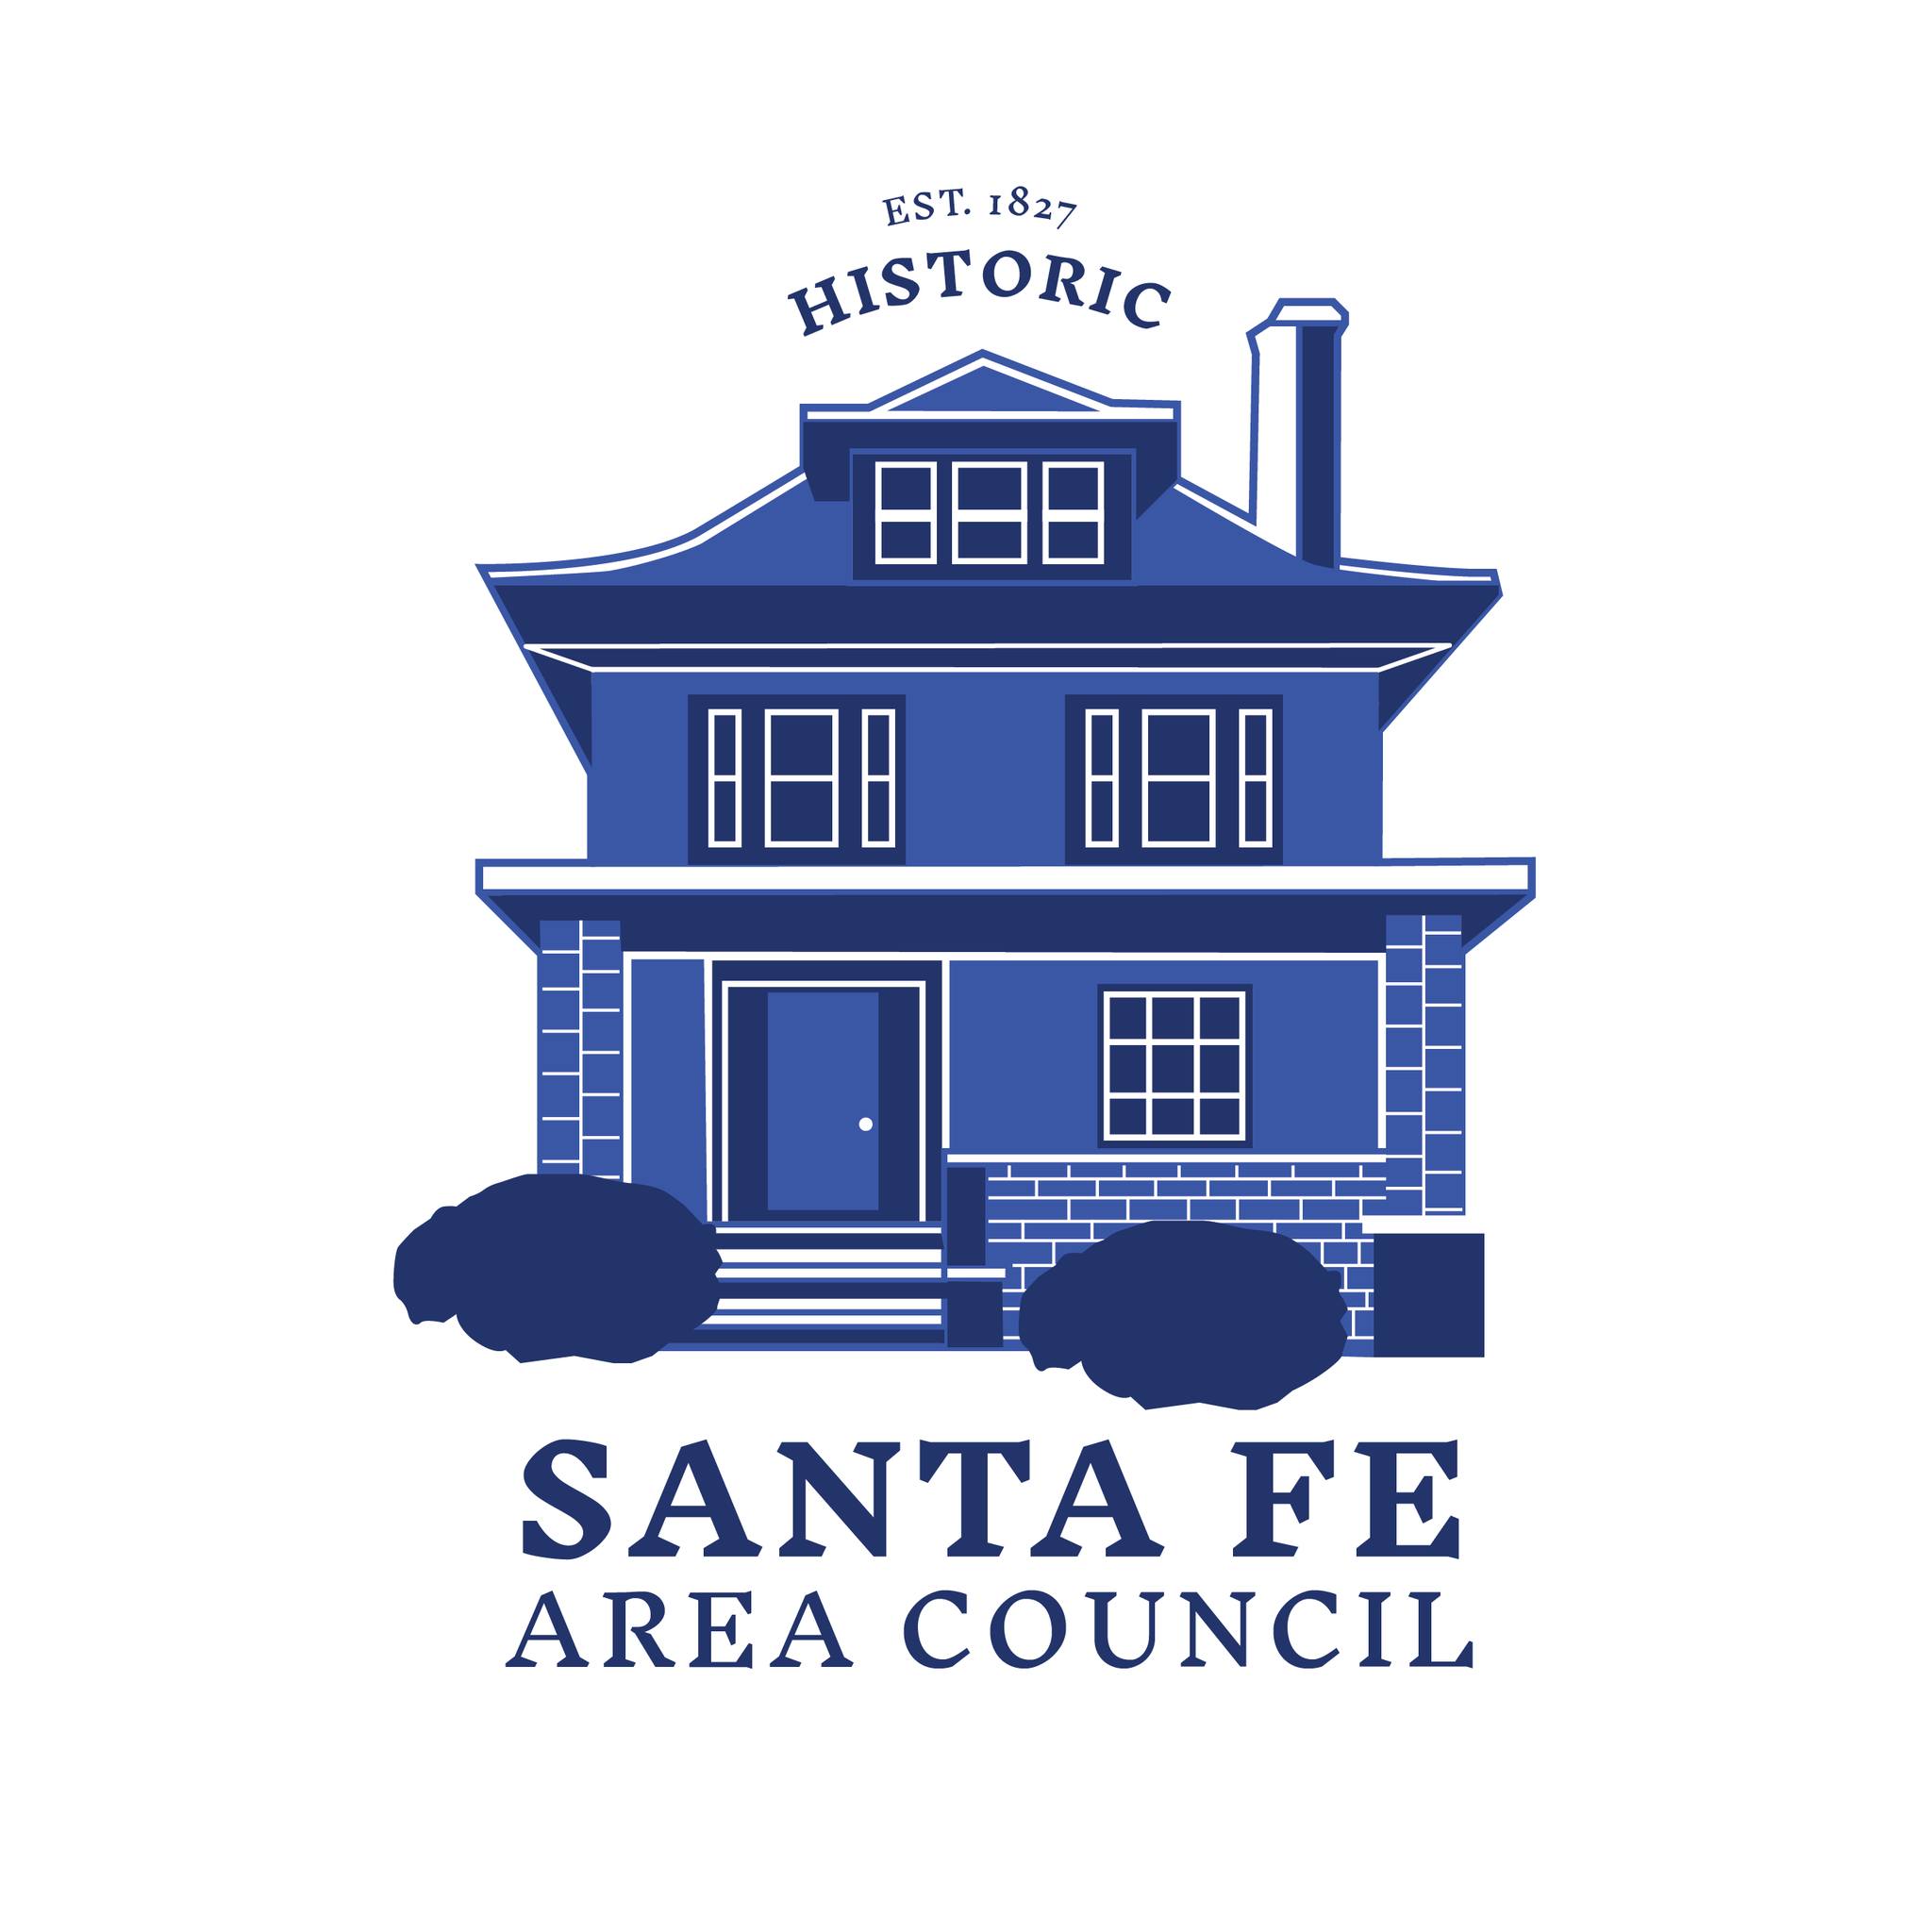 Santa Fe Area Council logo